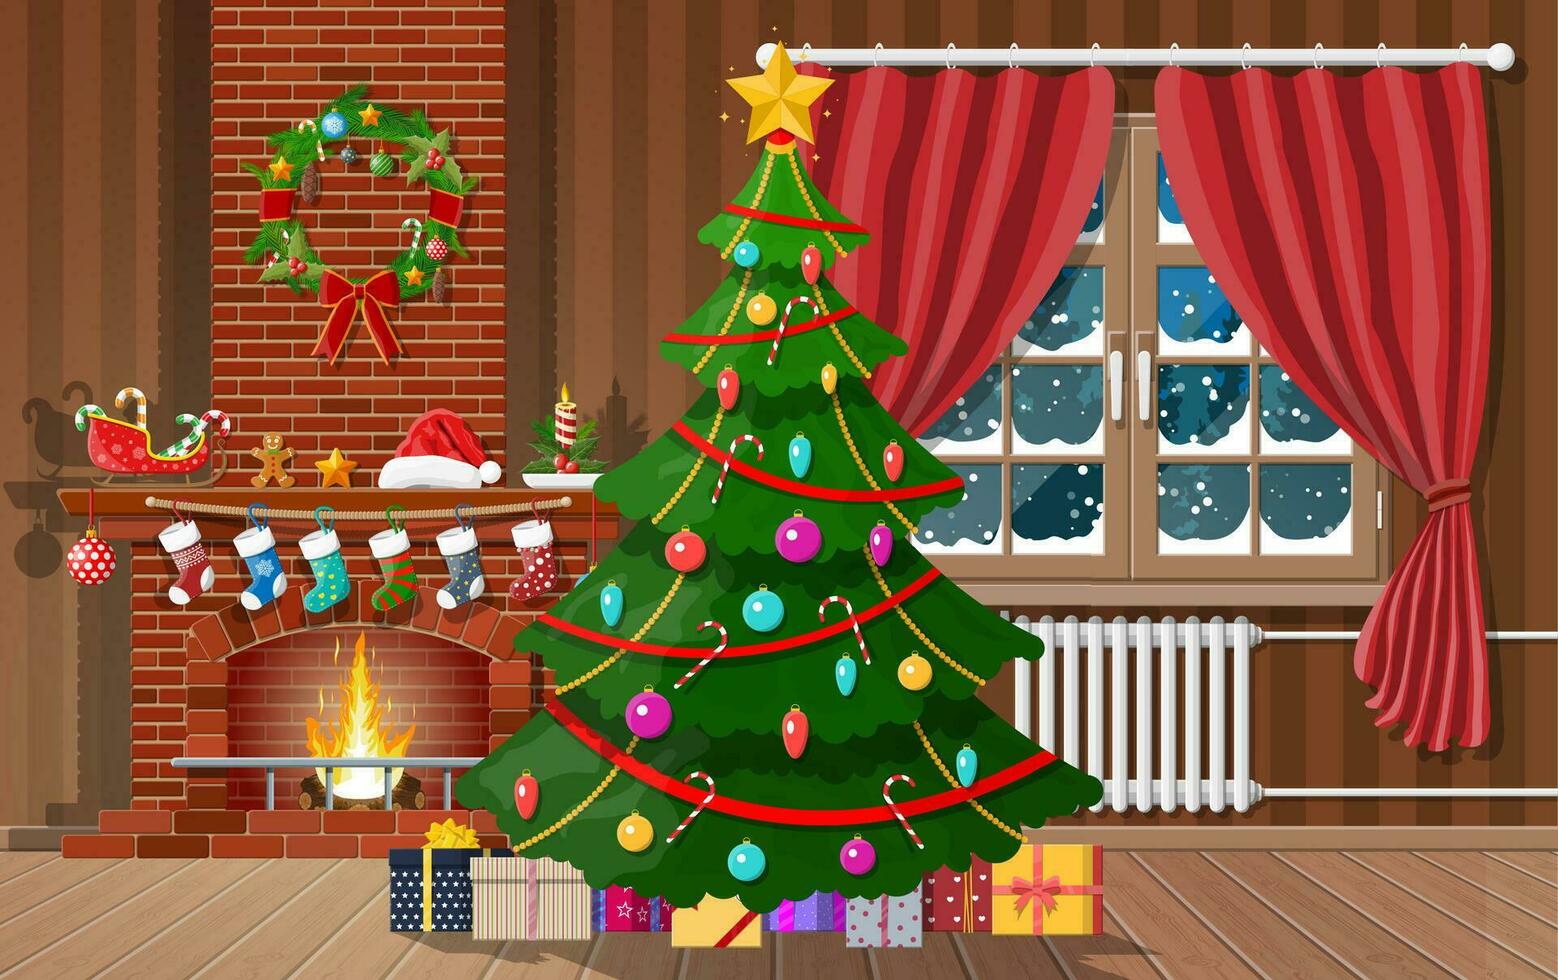 Navidad interior de habitación con árbol, ventana, regalos y decorado chimenea. contento nuevo año decoración. alegre Navidad día festivo. nuevo año y Navidad celebracion. vector ilustración plano estilo